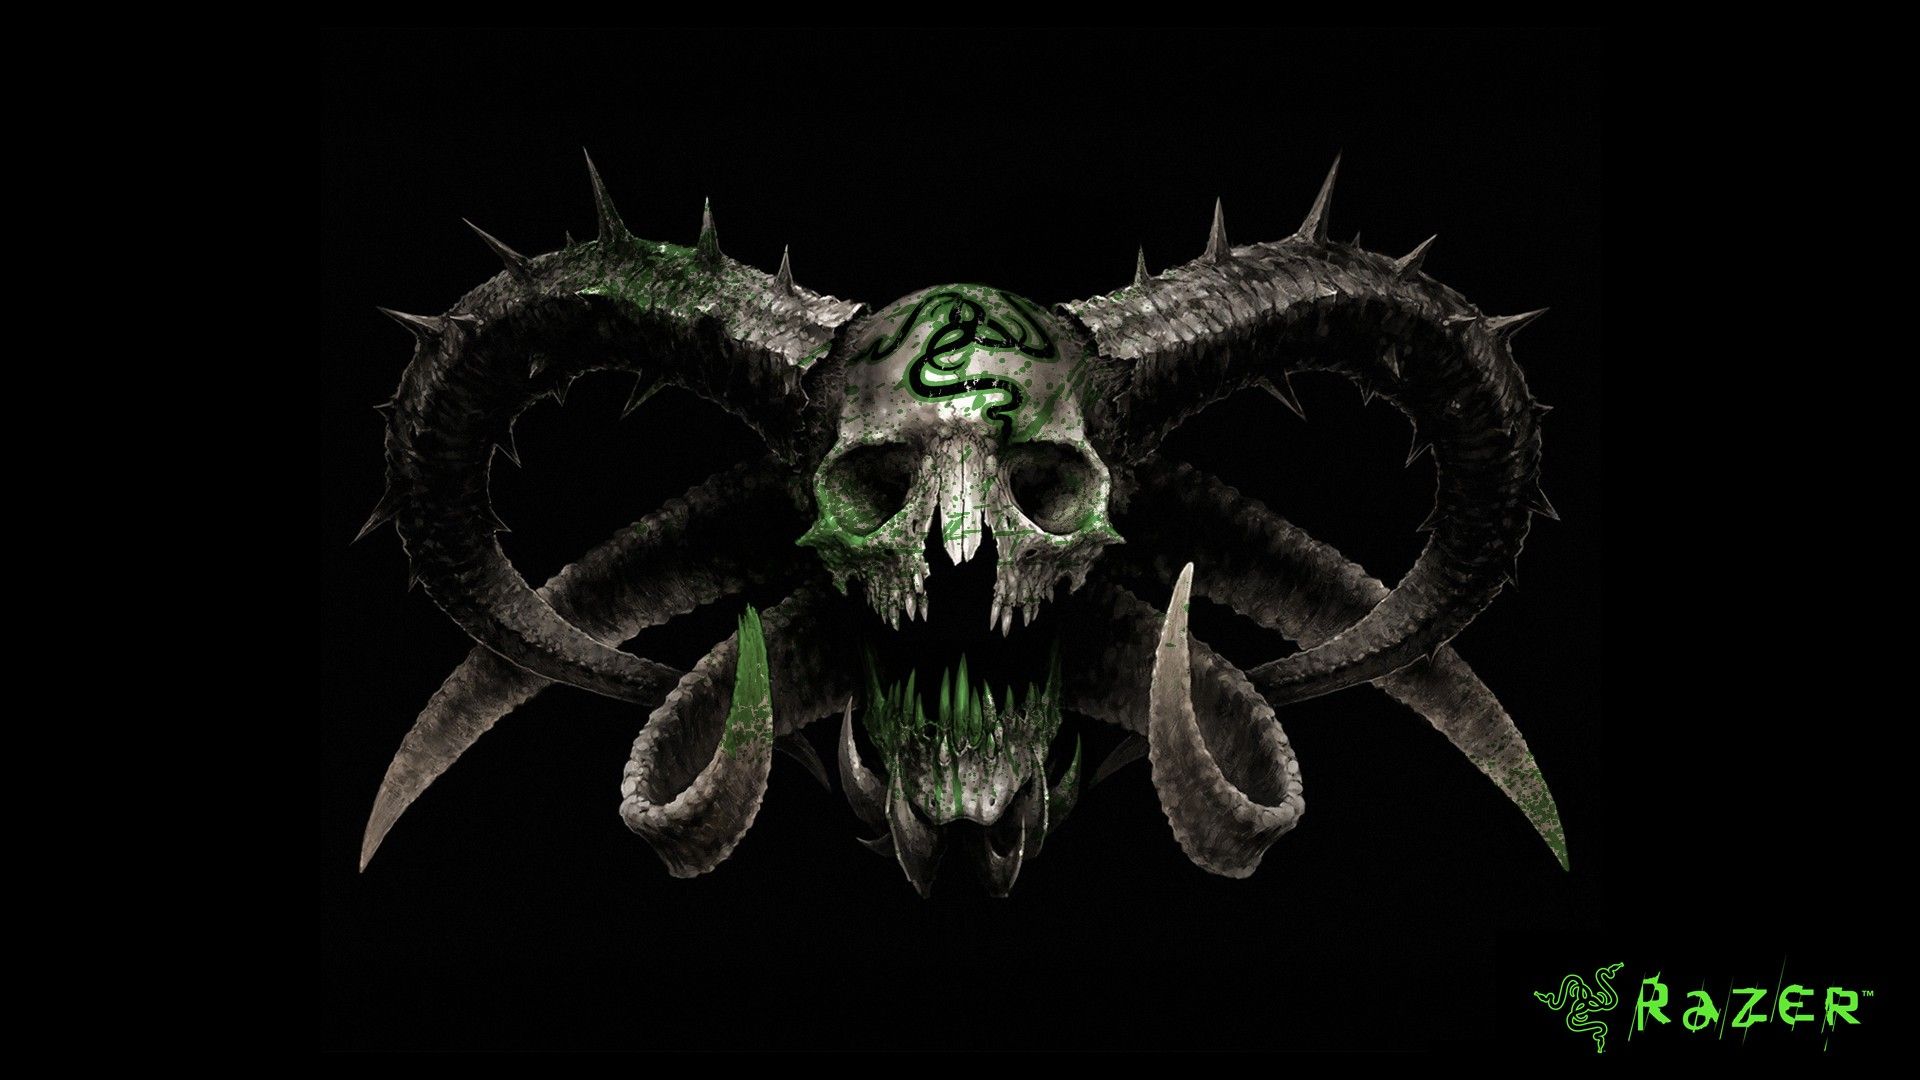 Cool Green Skull Wallpaper 1080p. liducdetho's Ownd